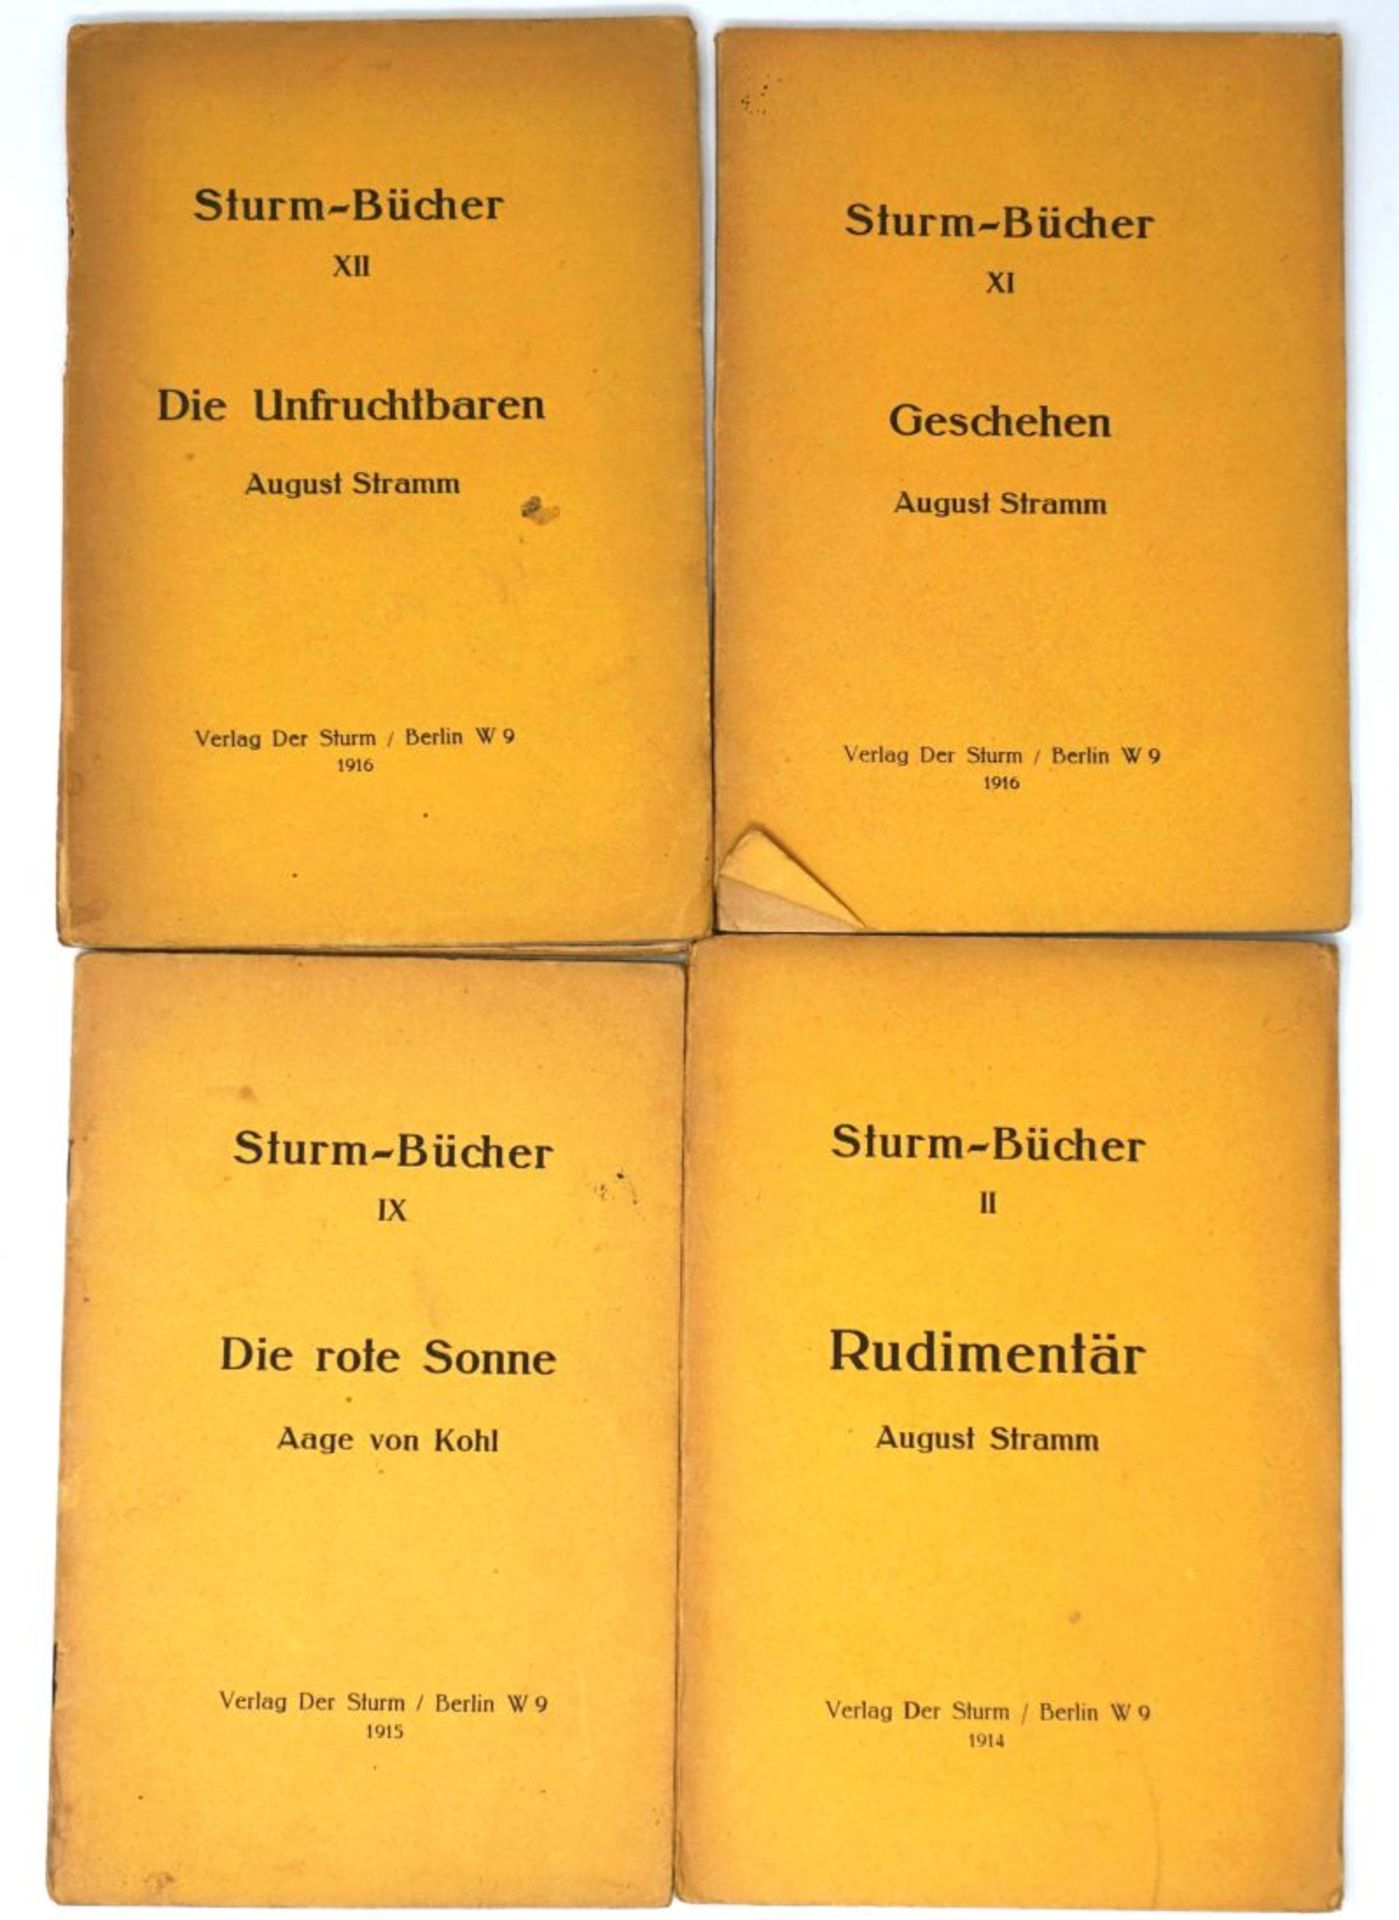 Sturm-Bücher: Nr. II, IX, XI, XII